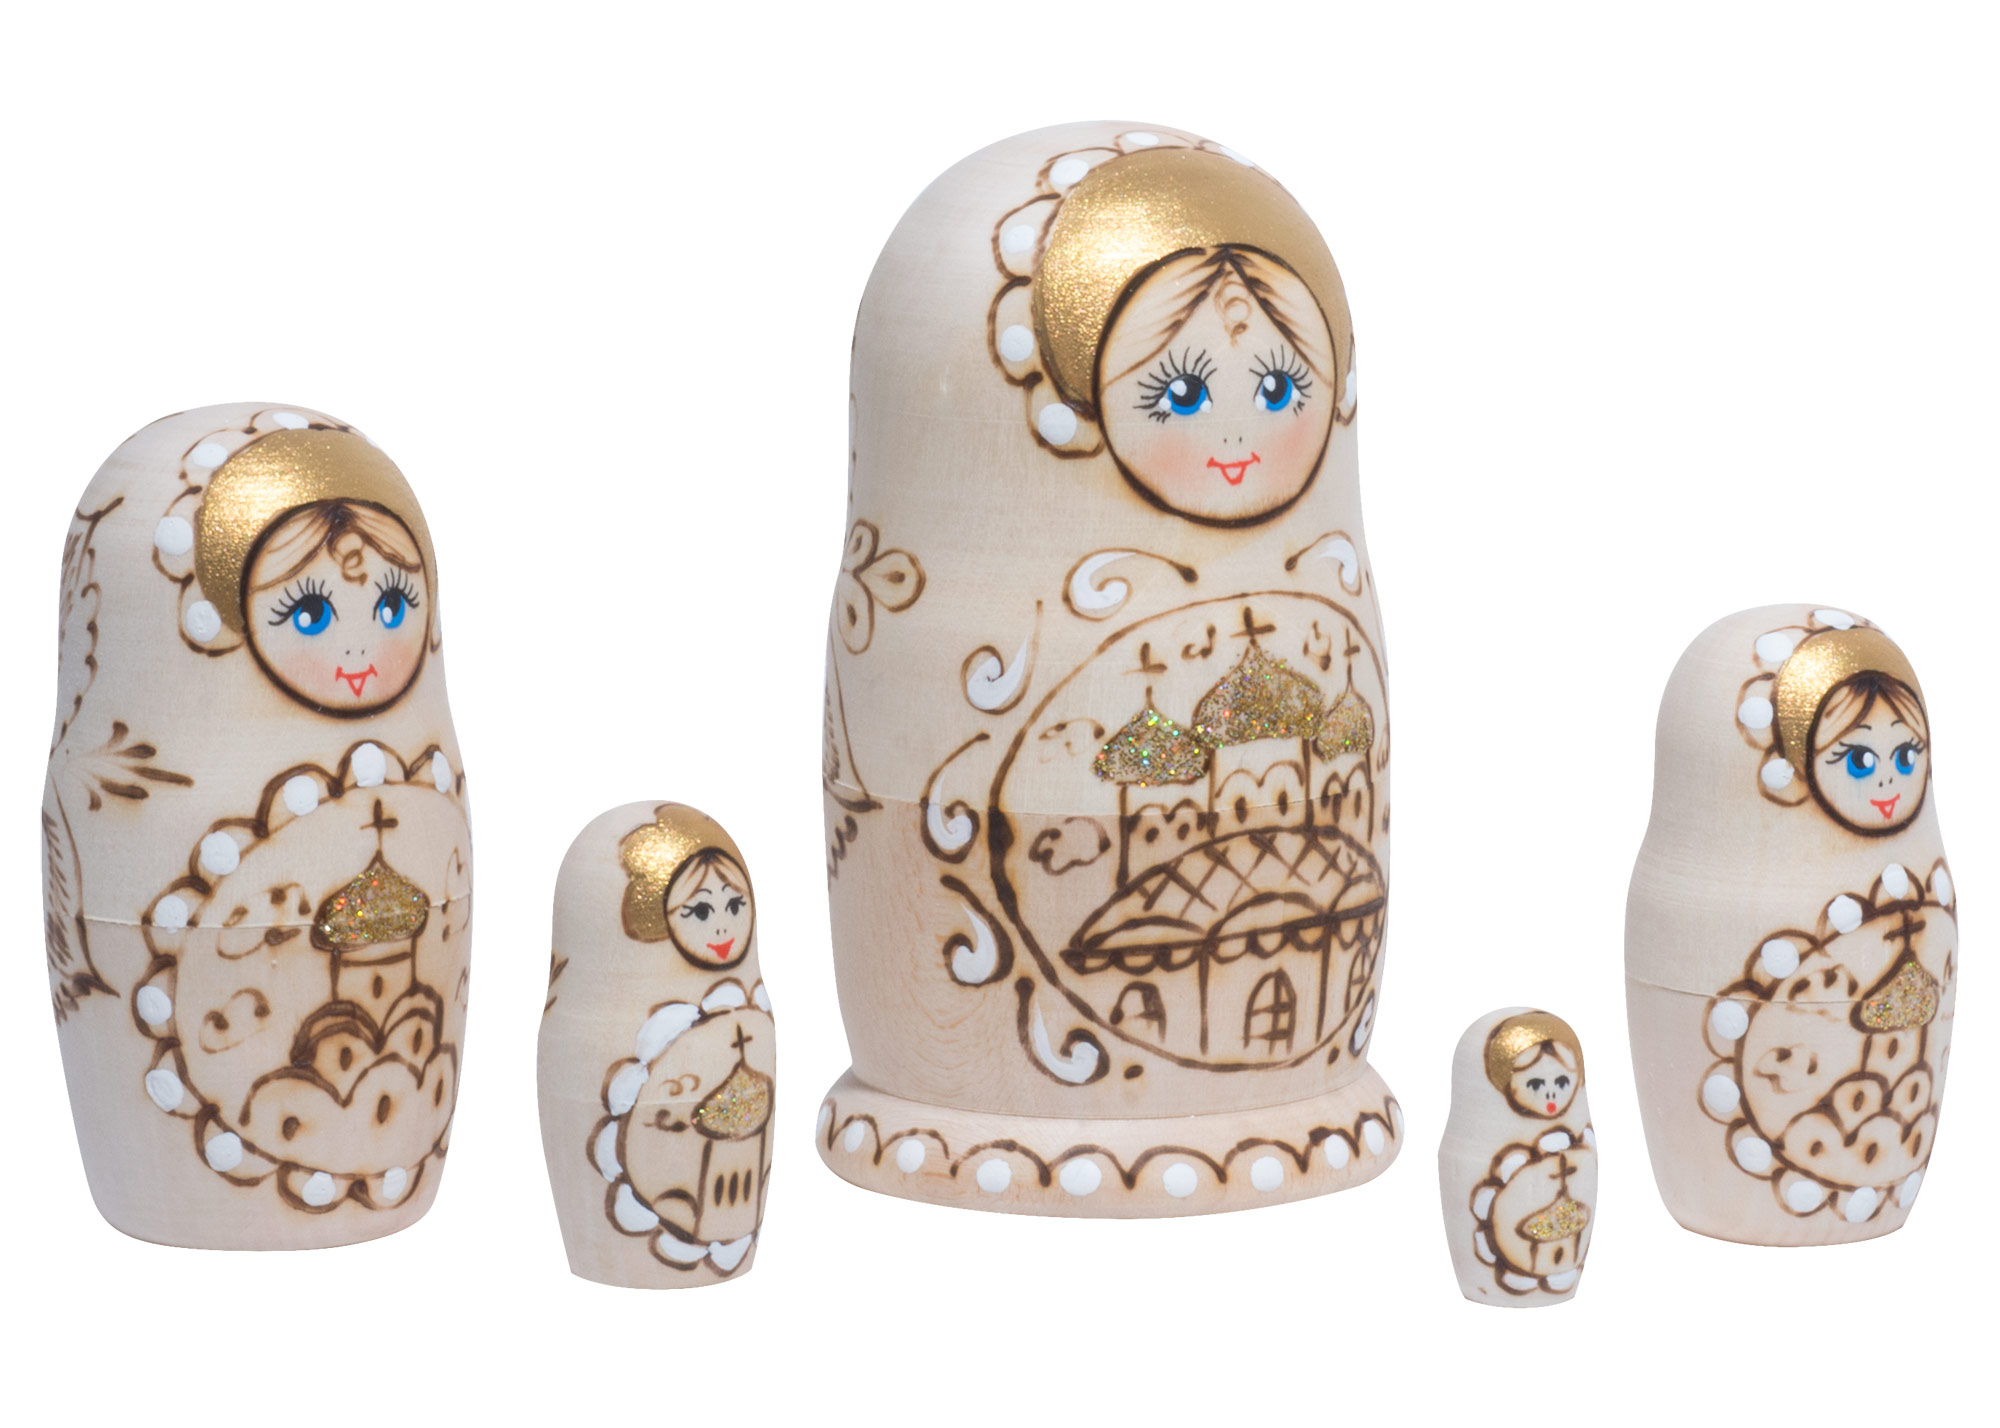 Buy Woodburned Church Babushka Doll 5pc./4" at GoldenCockerel.com